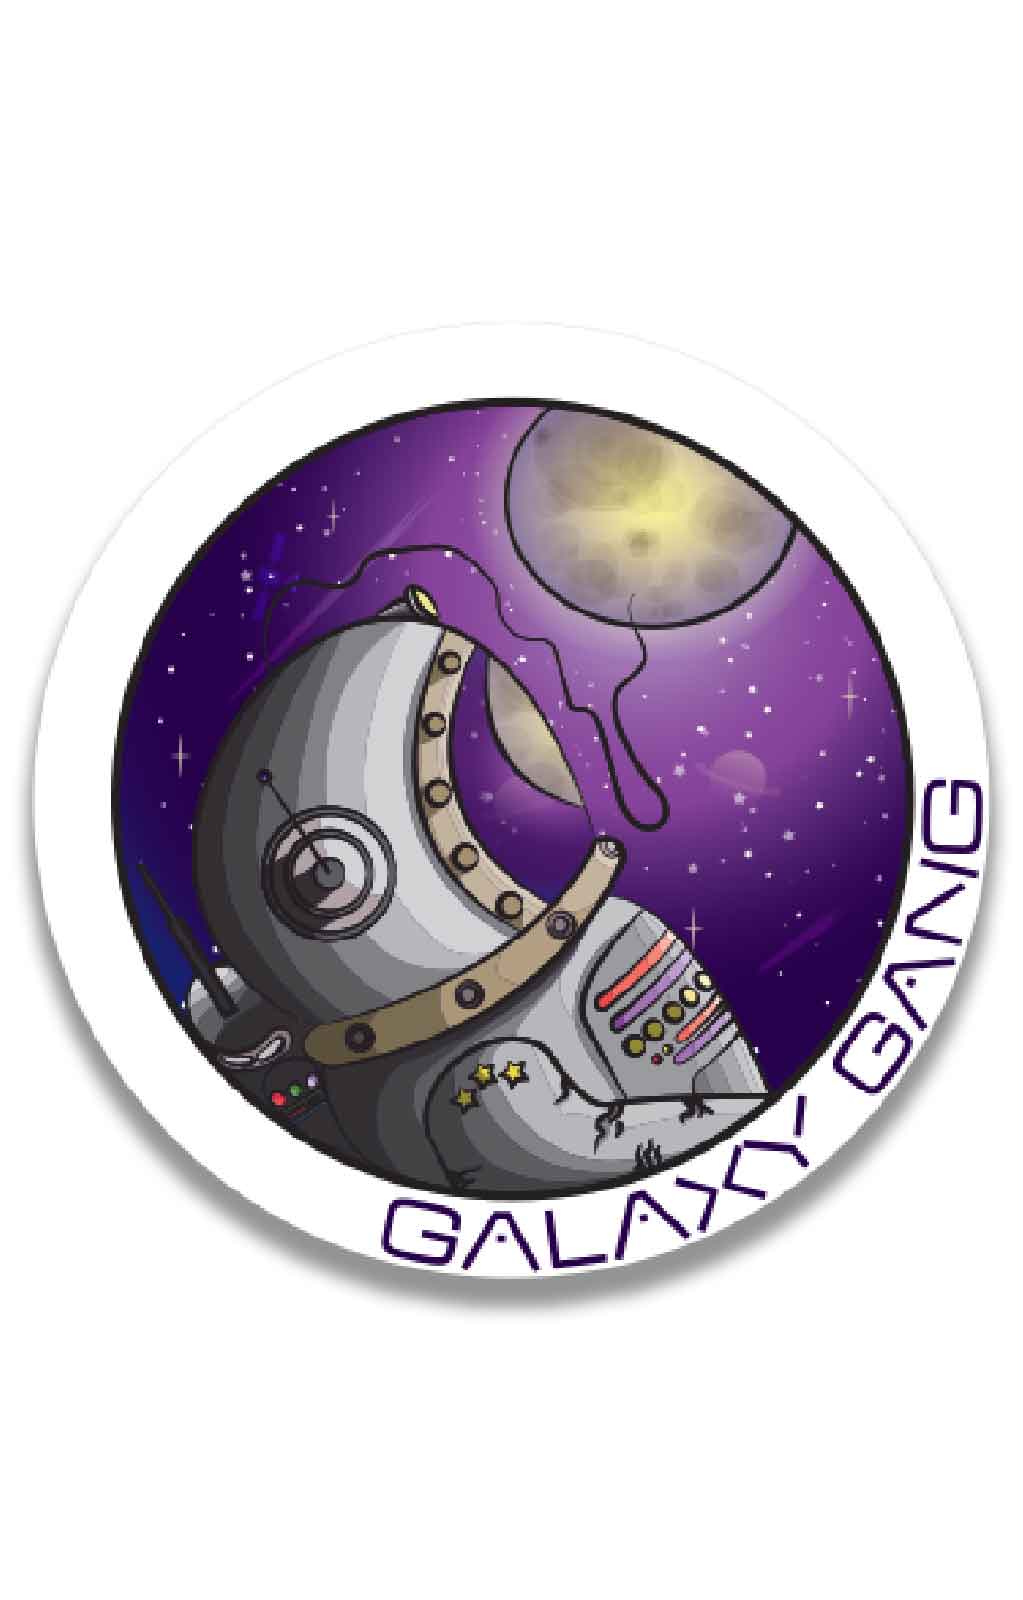 Galaxy Gang Sticker - Large Size